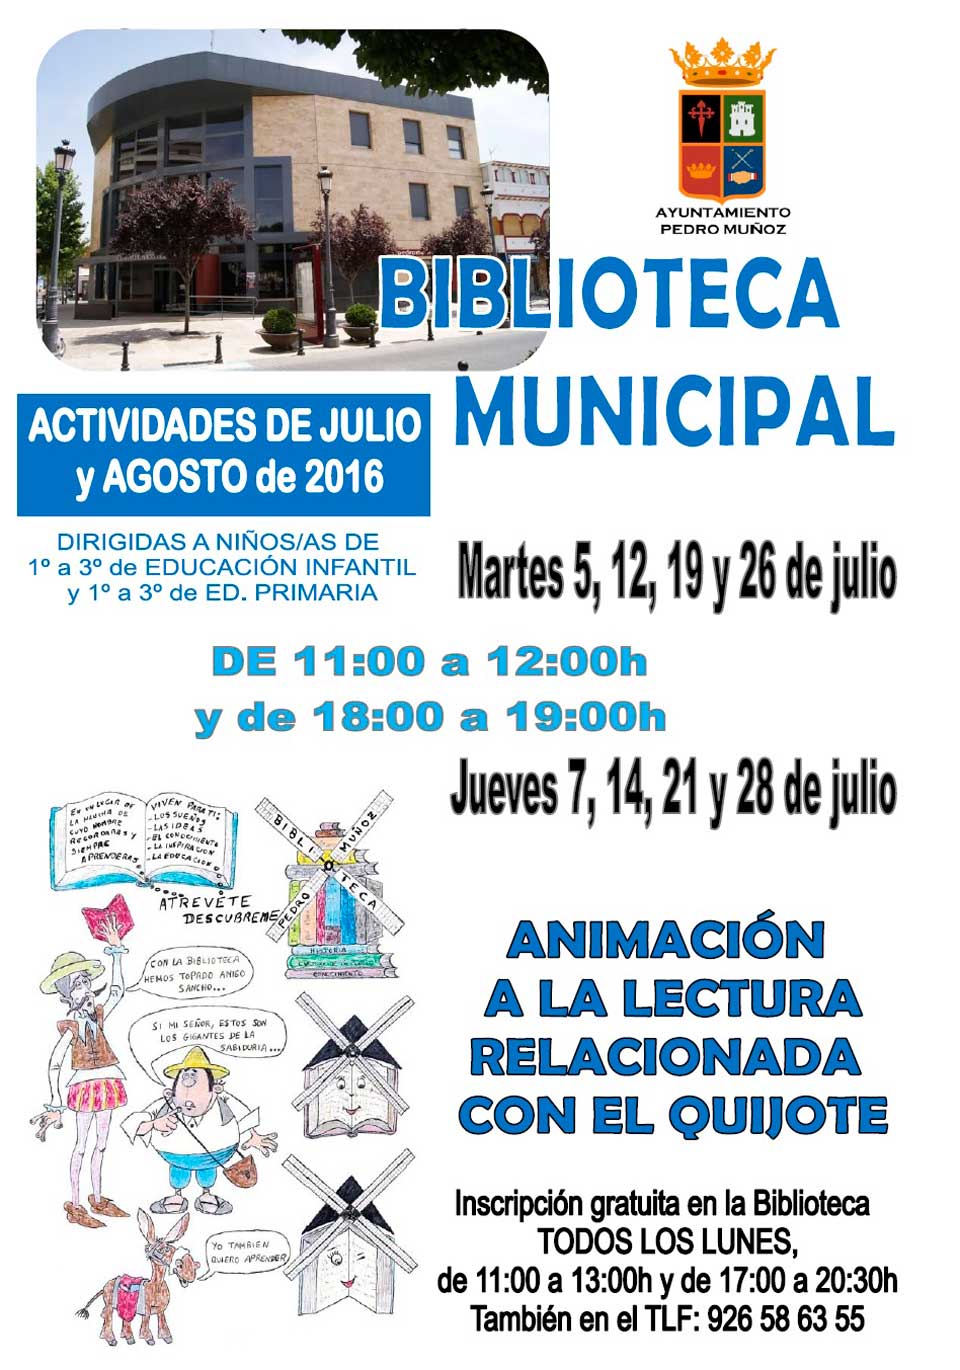 Nuevos talleres de animación a la lectura sobre "El Quijote" en la Biblioteca Municipal de Pedro Muñoz